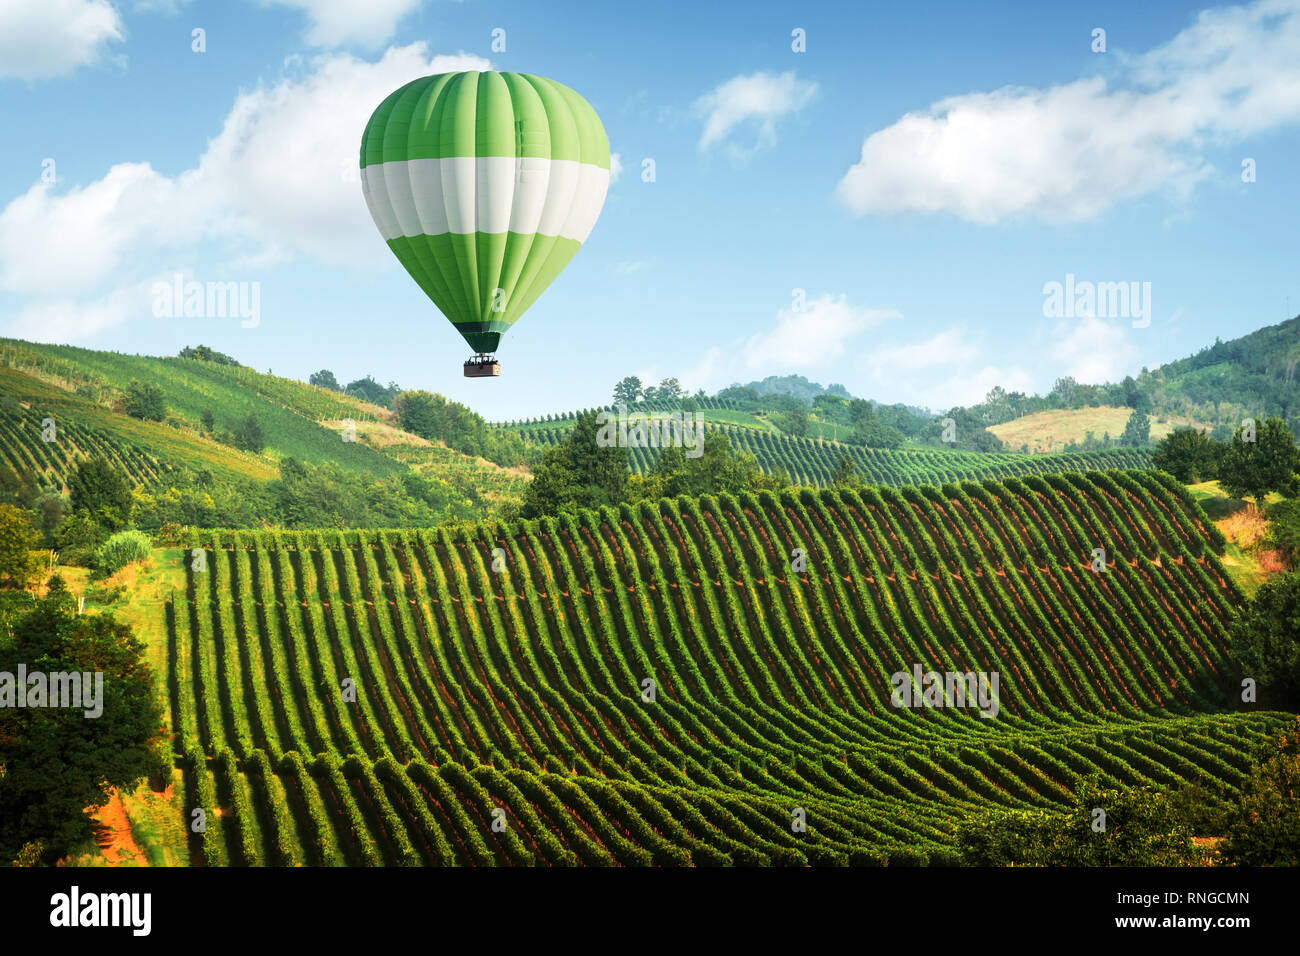 Incredibile paesaggio rurale con palloncino verde sotto il vigneto in Italia colline. Vite rendendo lo sfondo Foto Stock